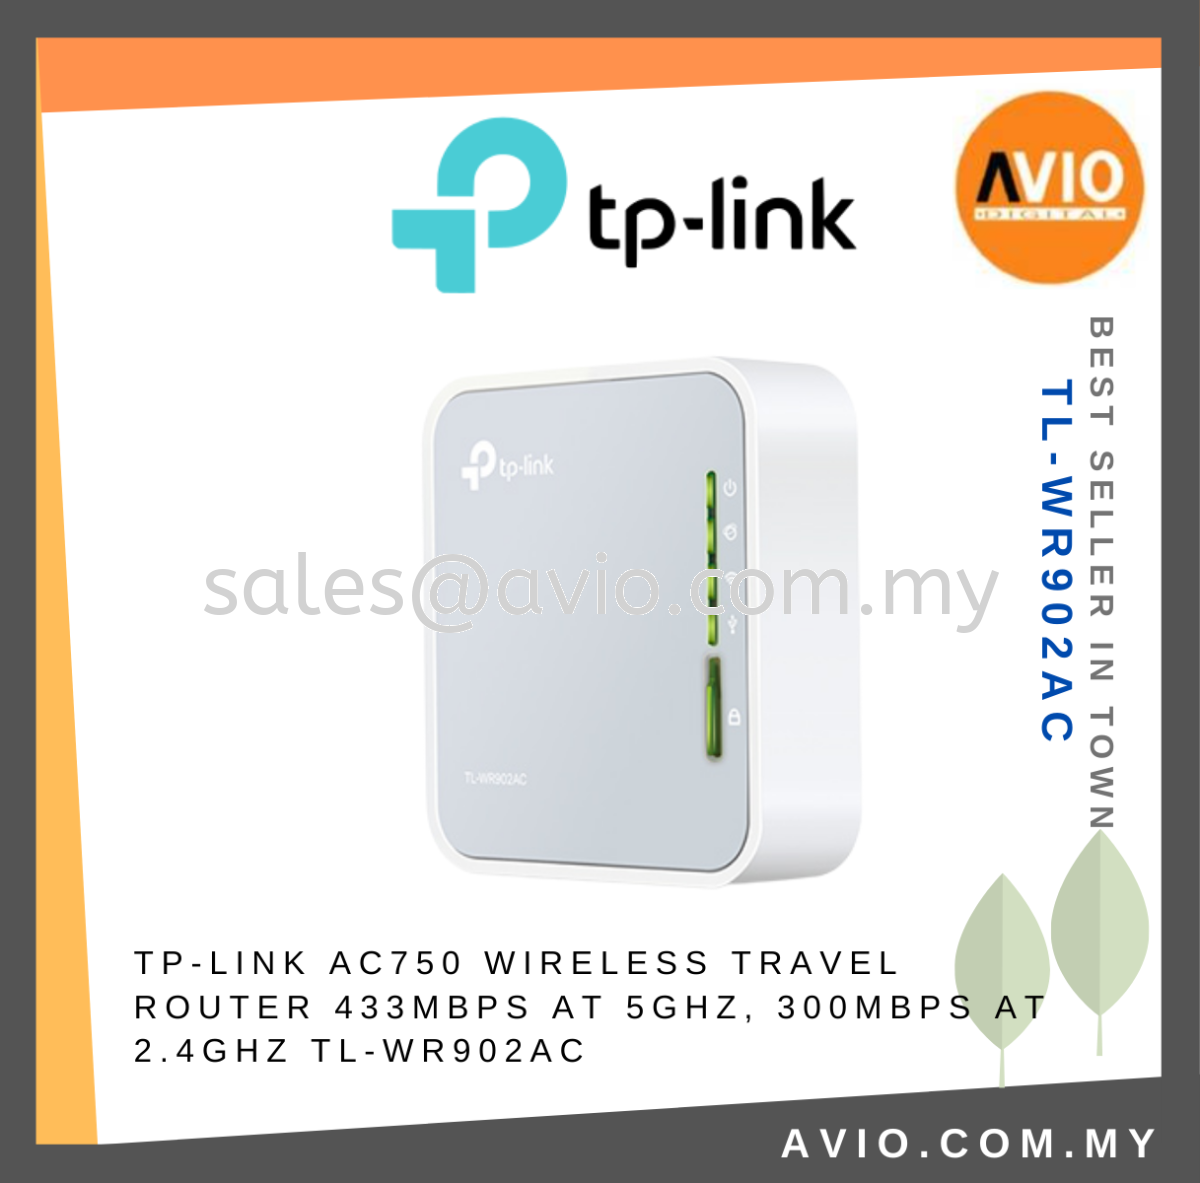 TP-LINK Tplink AC750 Wireless Travel Router Hotspot Mode Dual Band 2.4GHz  5GHz 3 Antennas